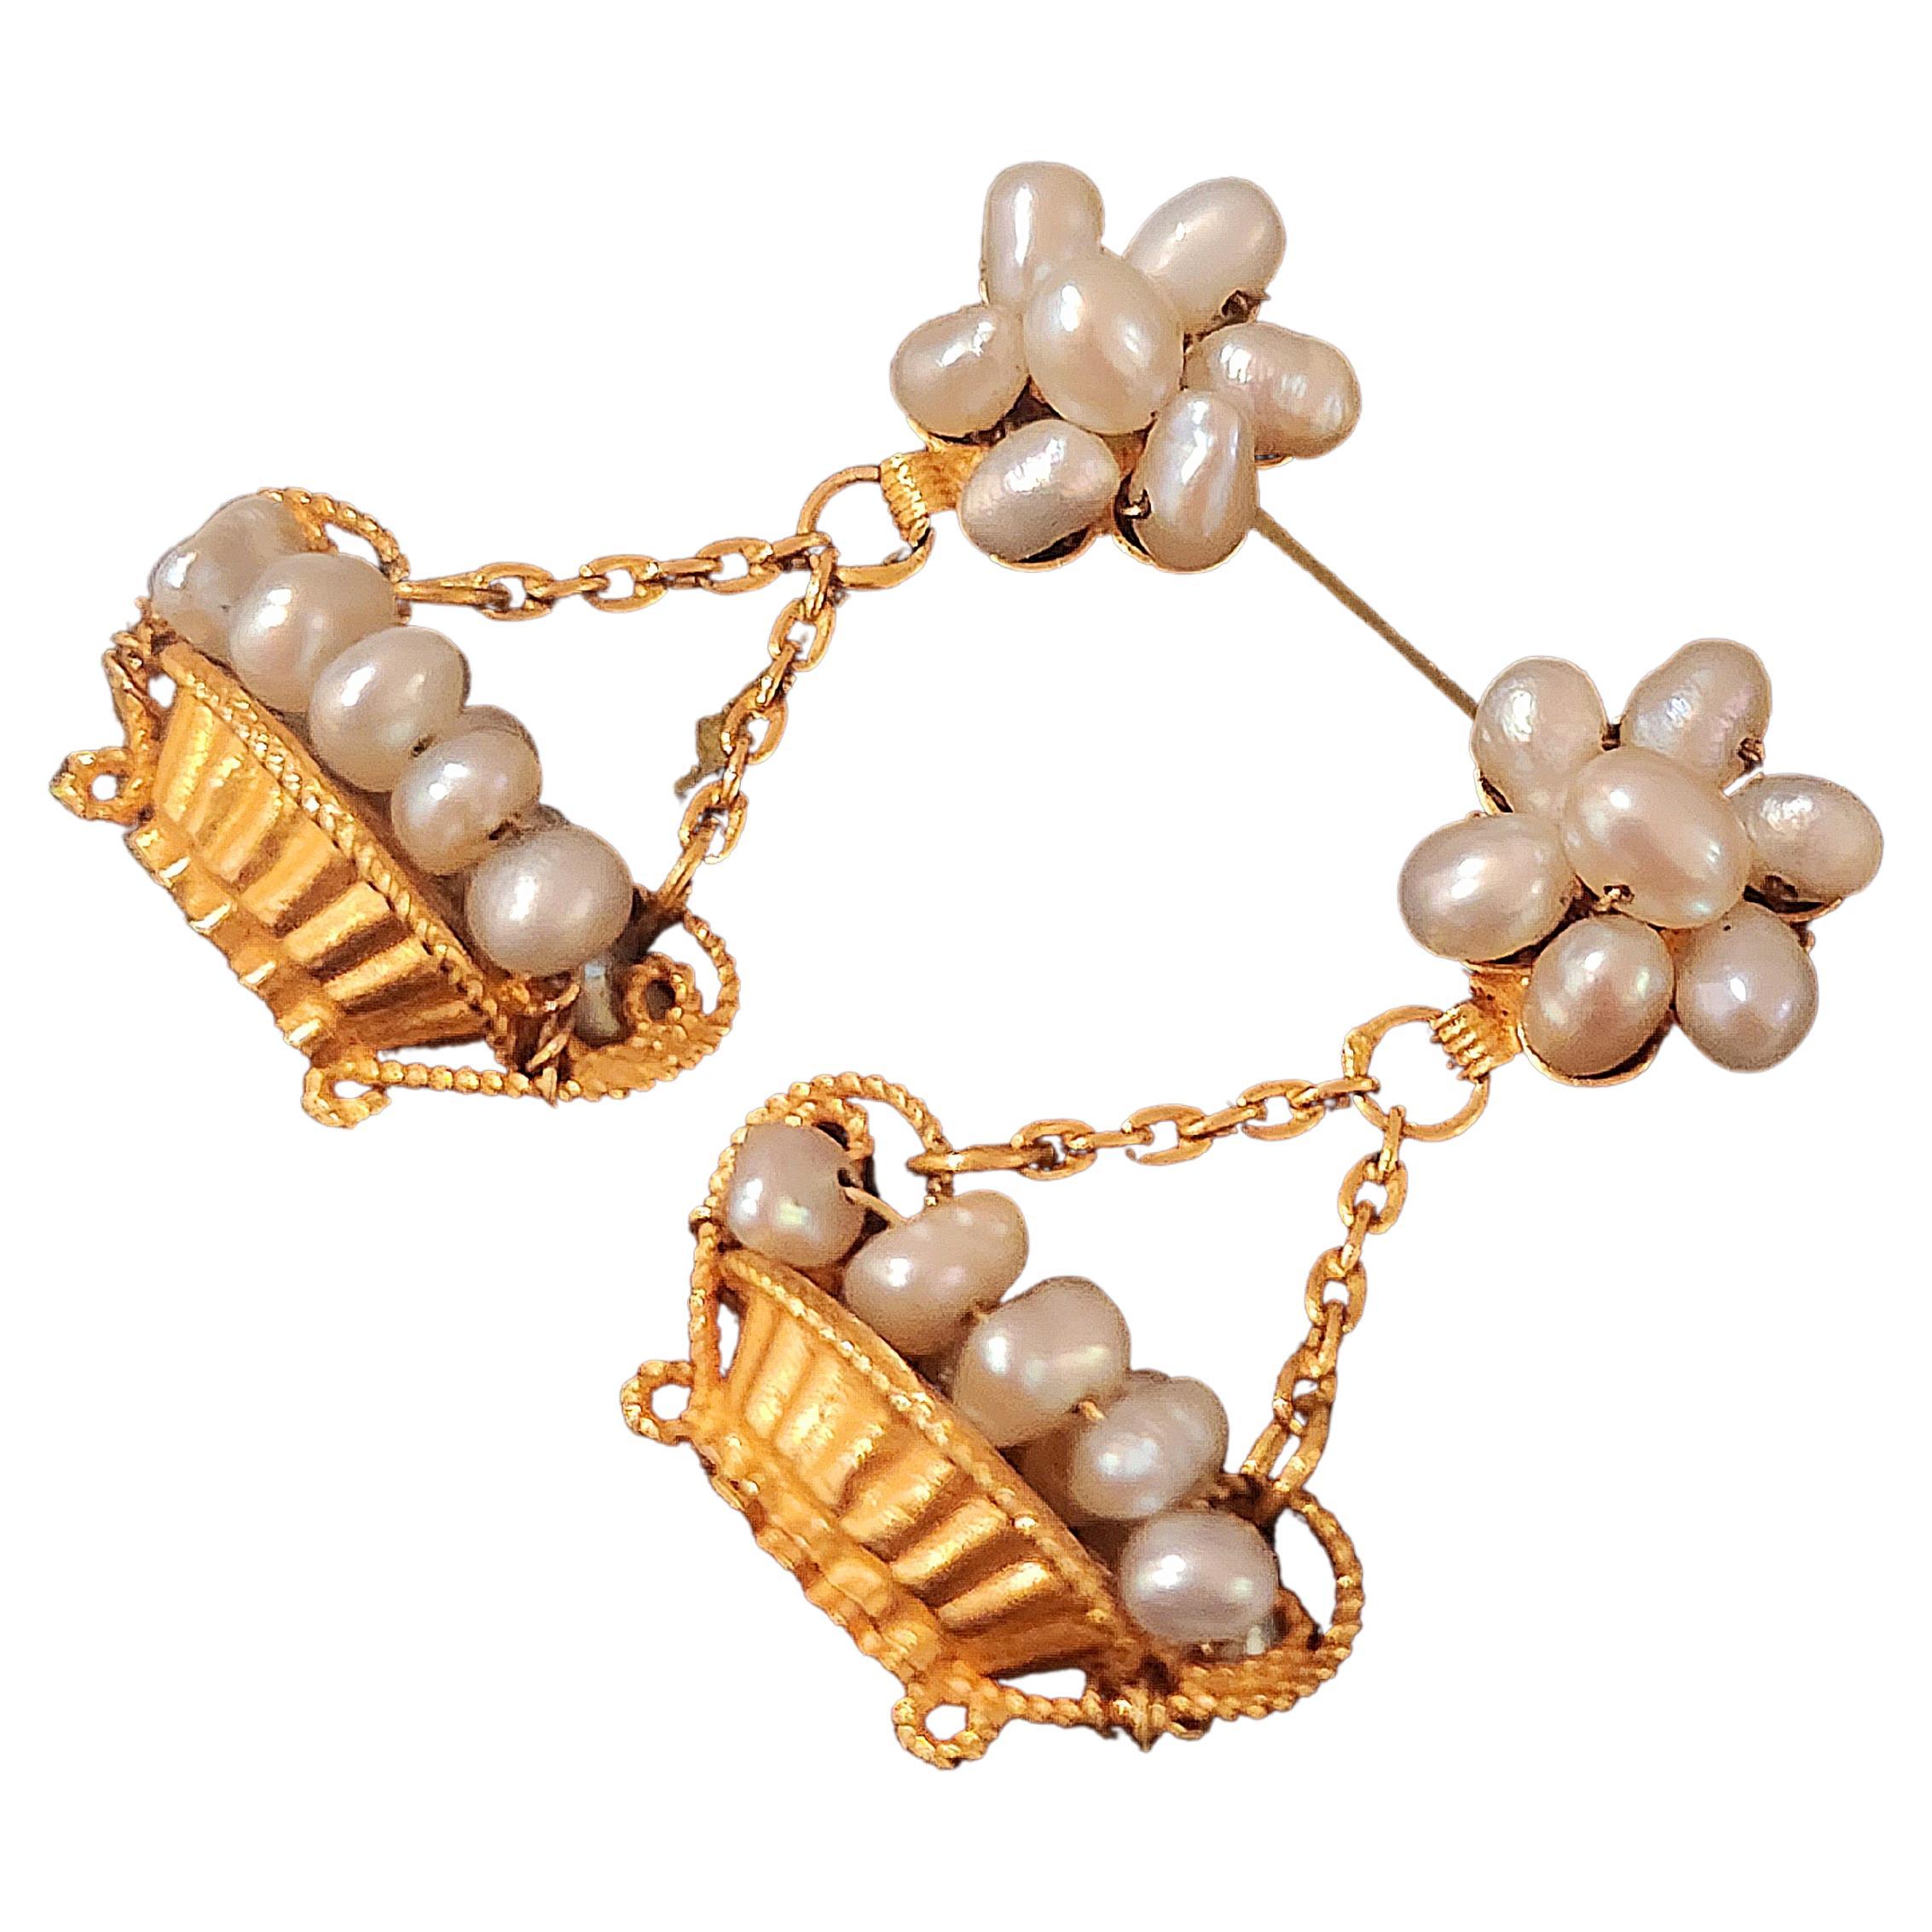 Vintage 1940s boucles d'oreilles pendantes en or jaune 22k avec des perles blanches naturelles de Bahreïn boucles d'oreilles en forme de panier fruité avec une longueur totale de 3cm hall marqué avec de l'or fin. 